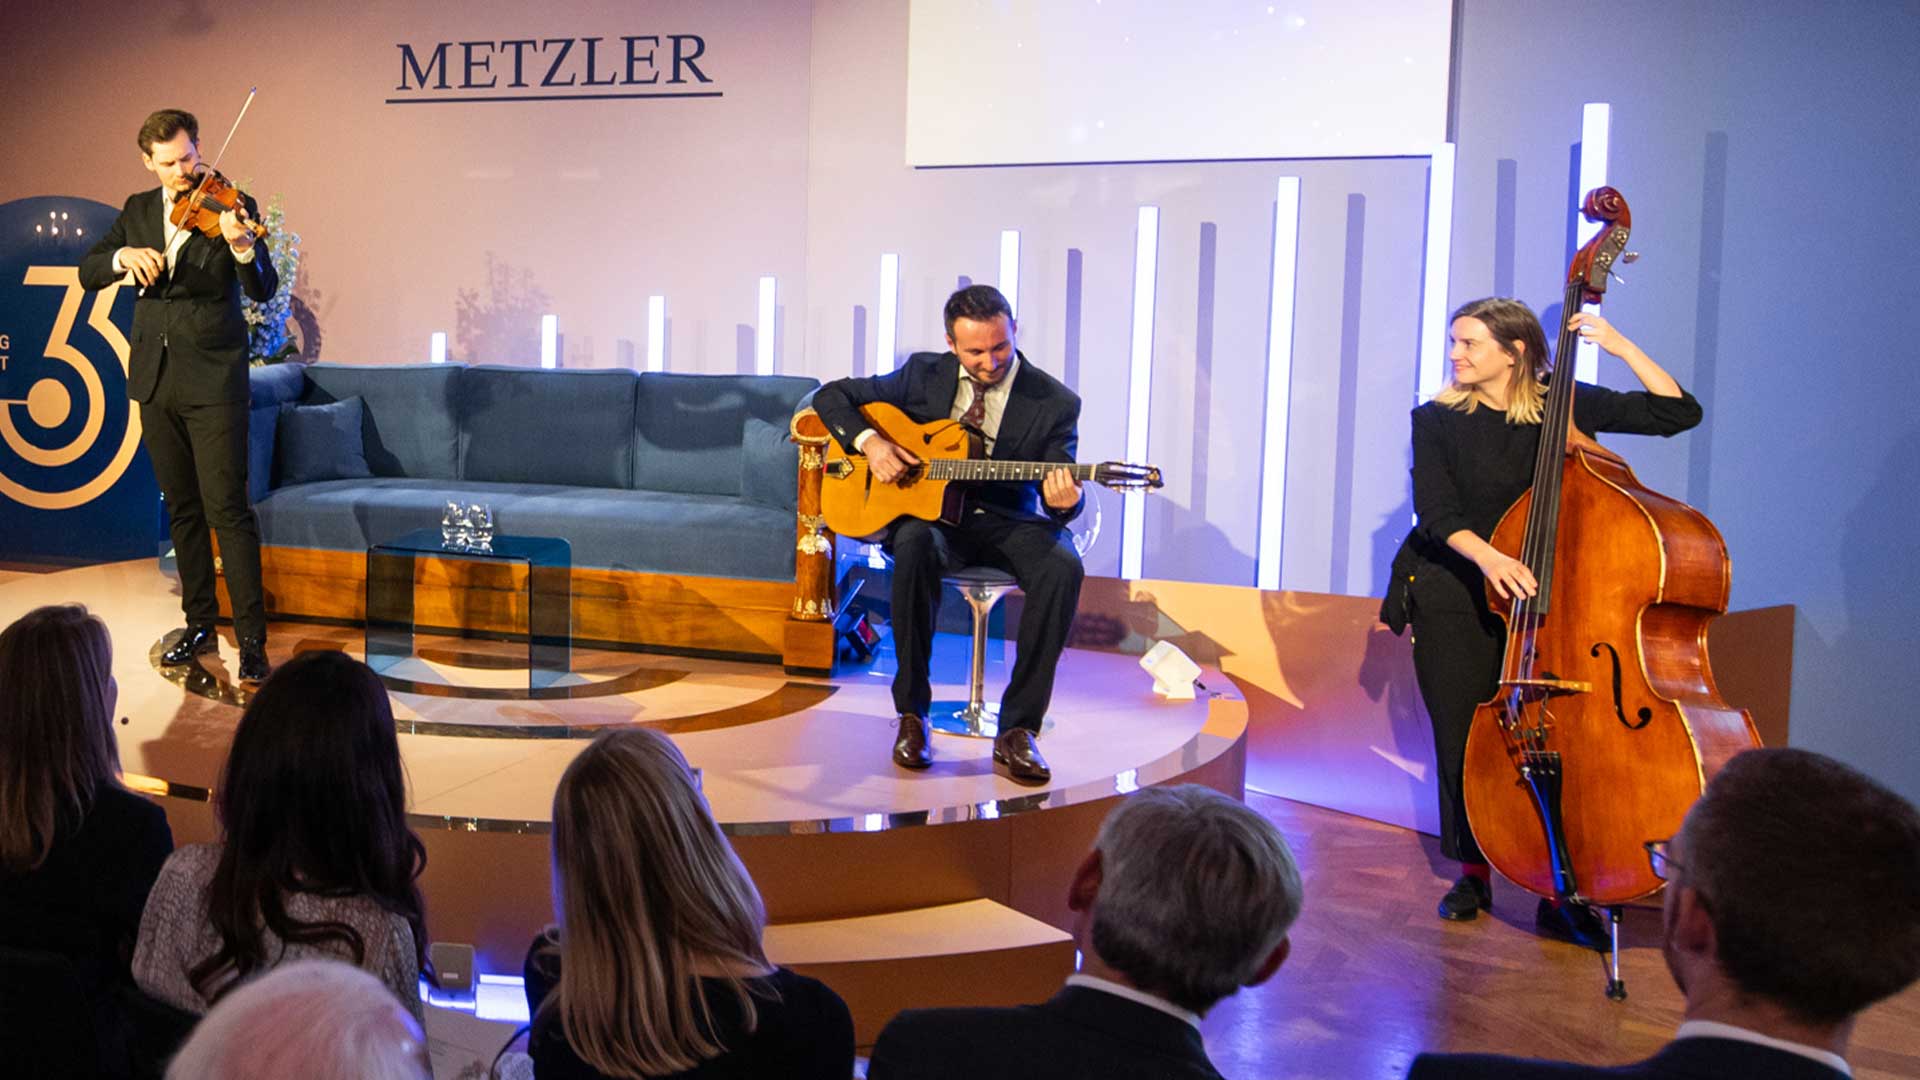 Musikalische Untermalung beim Metzler Zukunfts-Talk in München